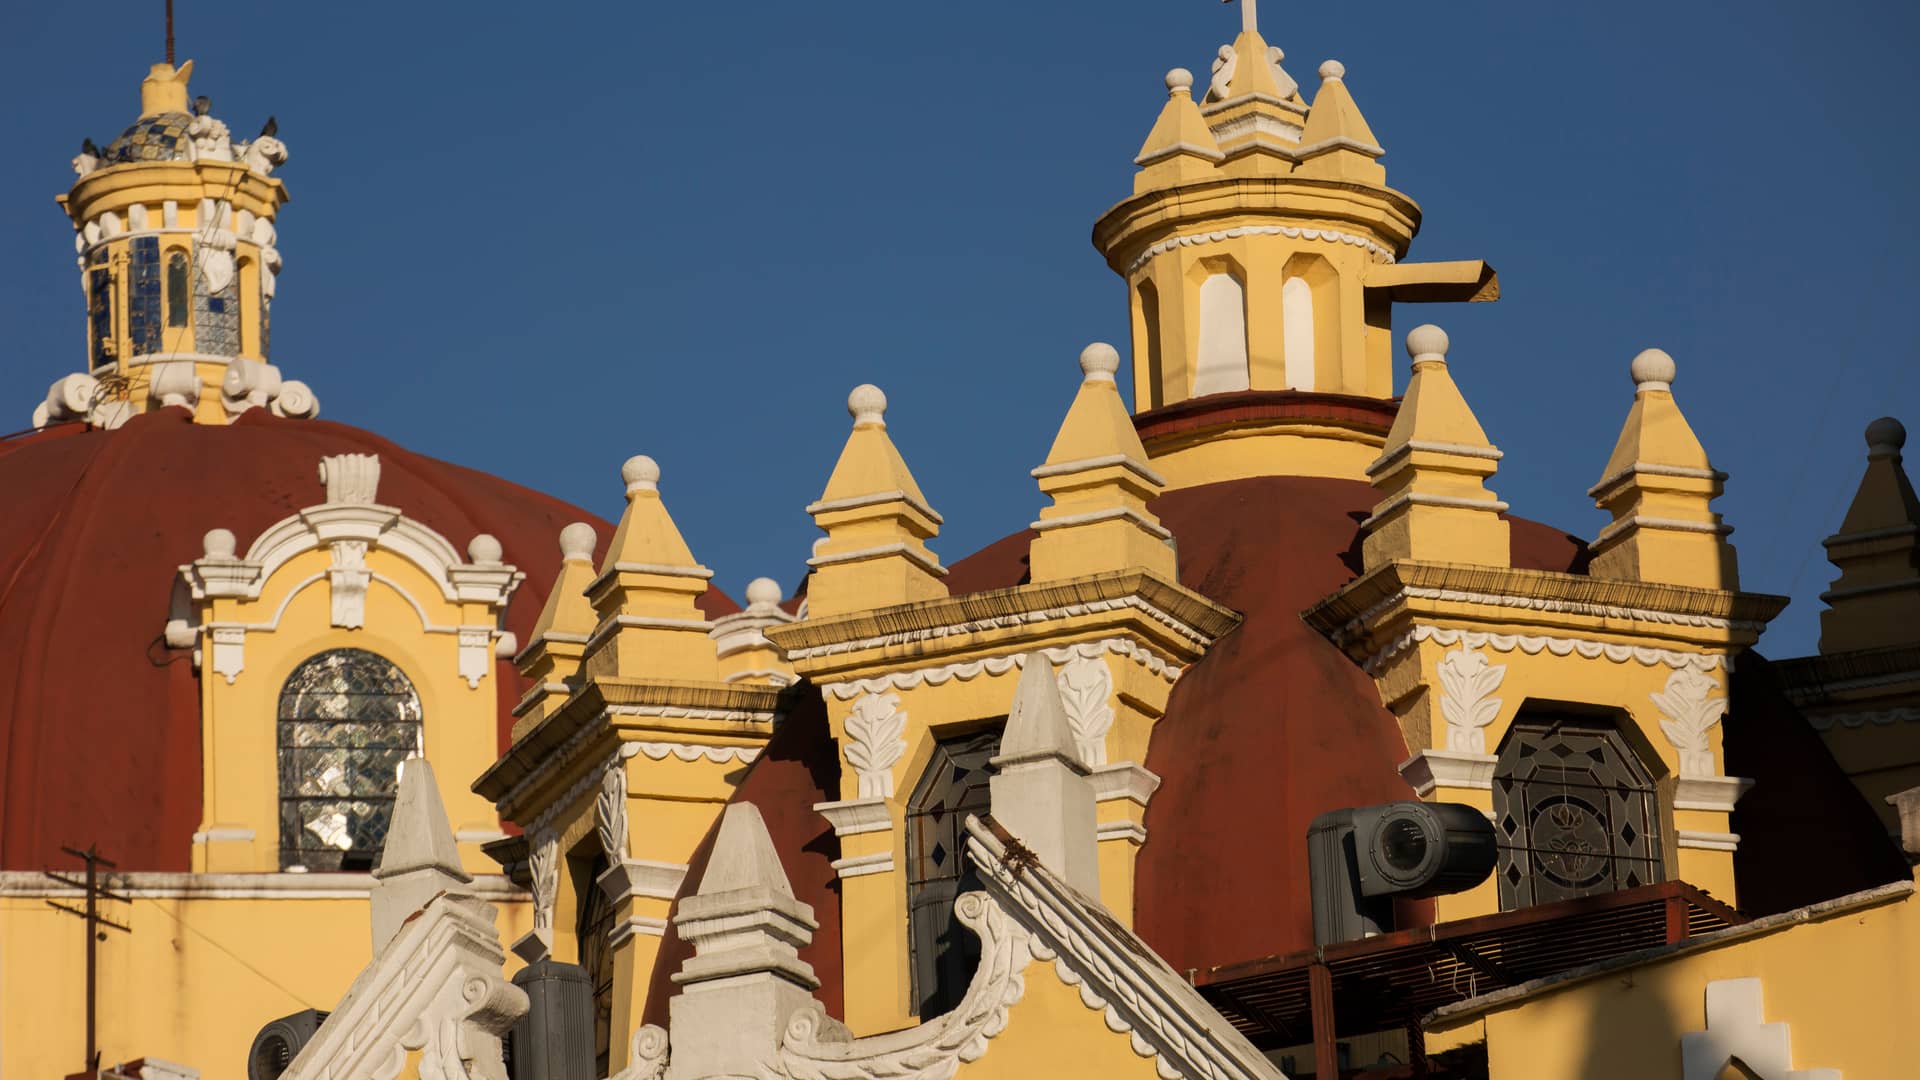 tejados de un monumento de la ciudad de xalapa que representan las sucursales de megacable en esa localidad